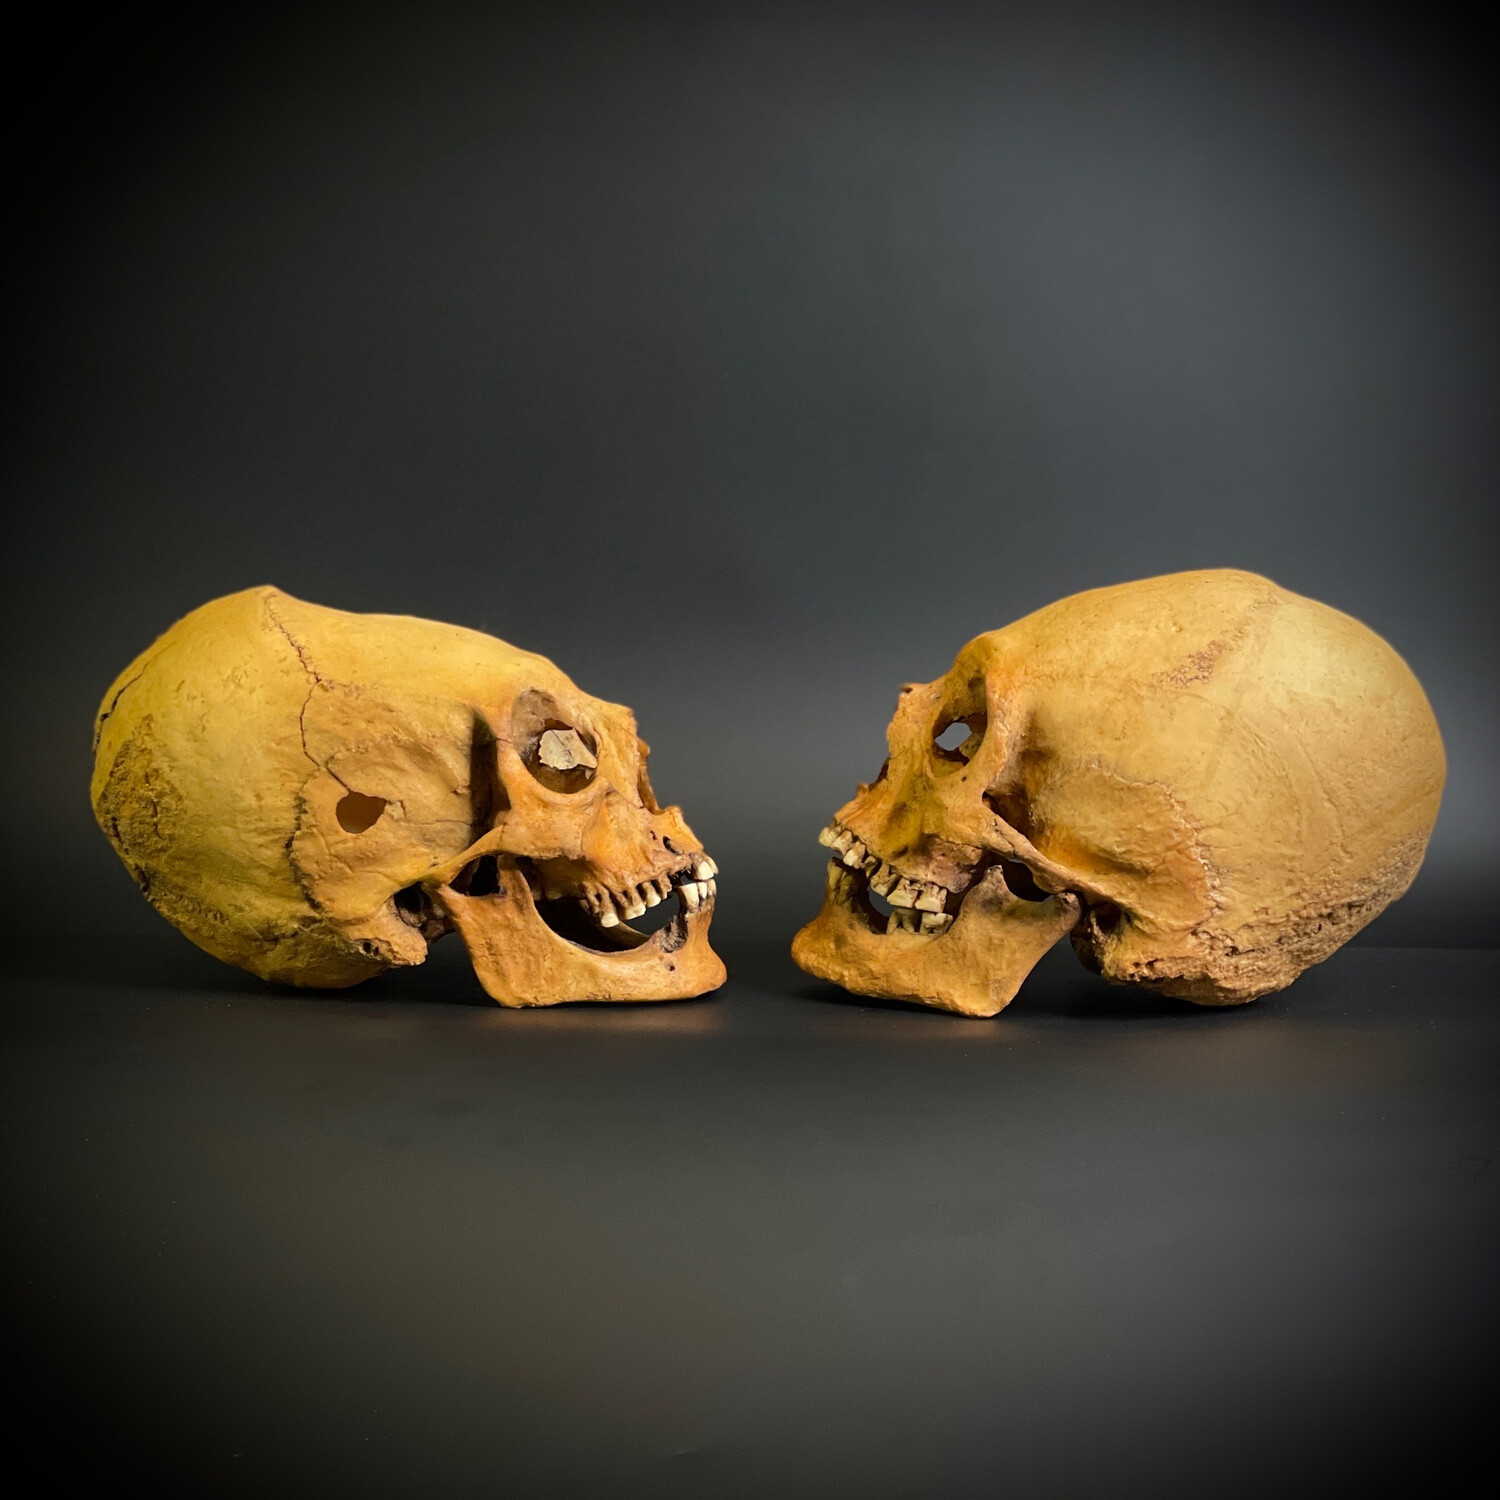 Череп человека мужской + череп человека женский (анатомические модели)